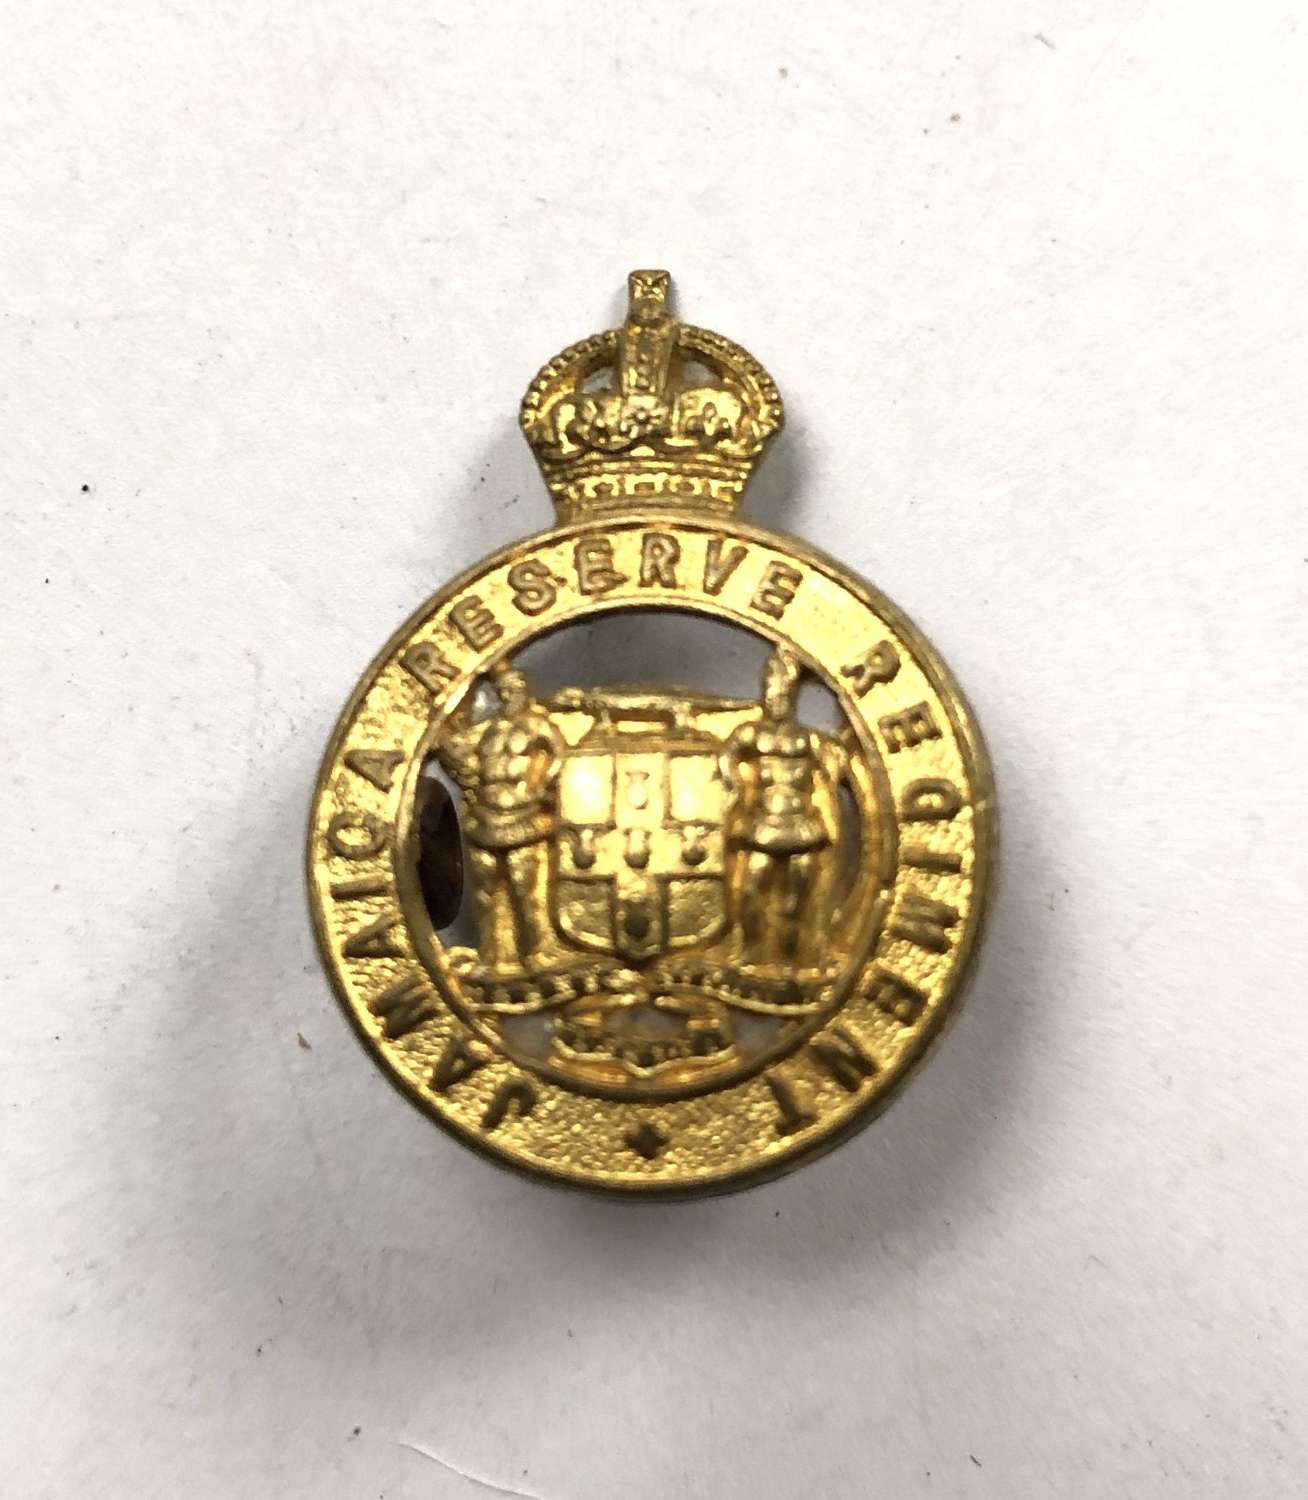 Jamaica Reserve Regiment cap badge circa 1901-45